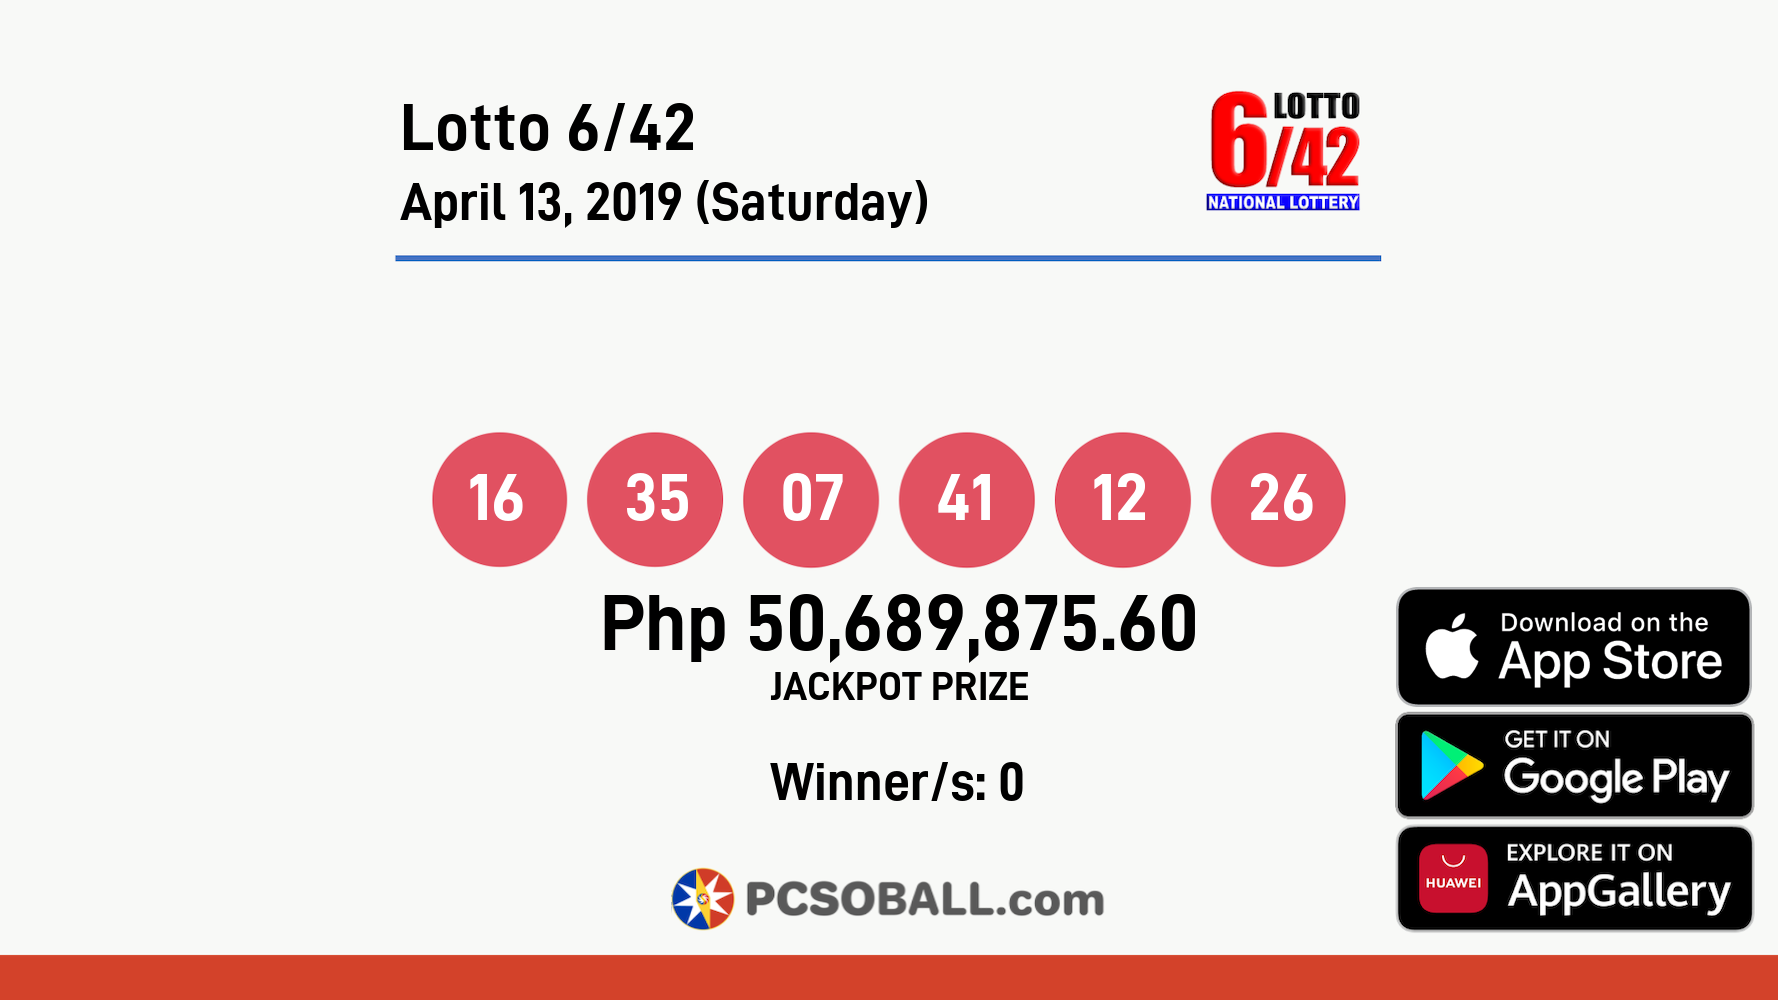 Lotto 6/42 April 13, 2019 (Saturday) Result